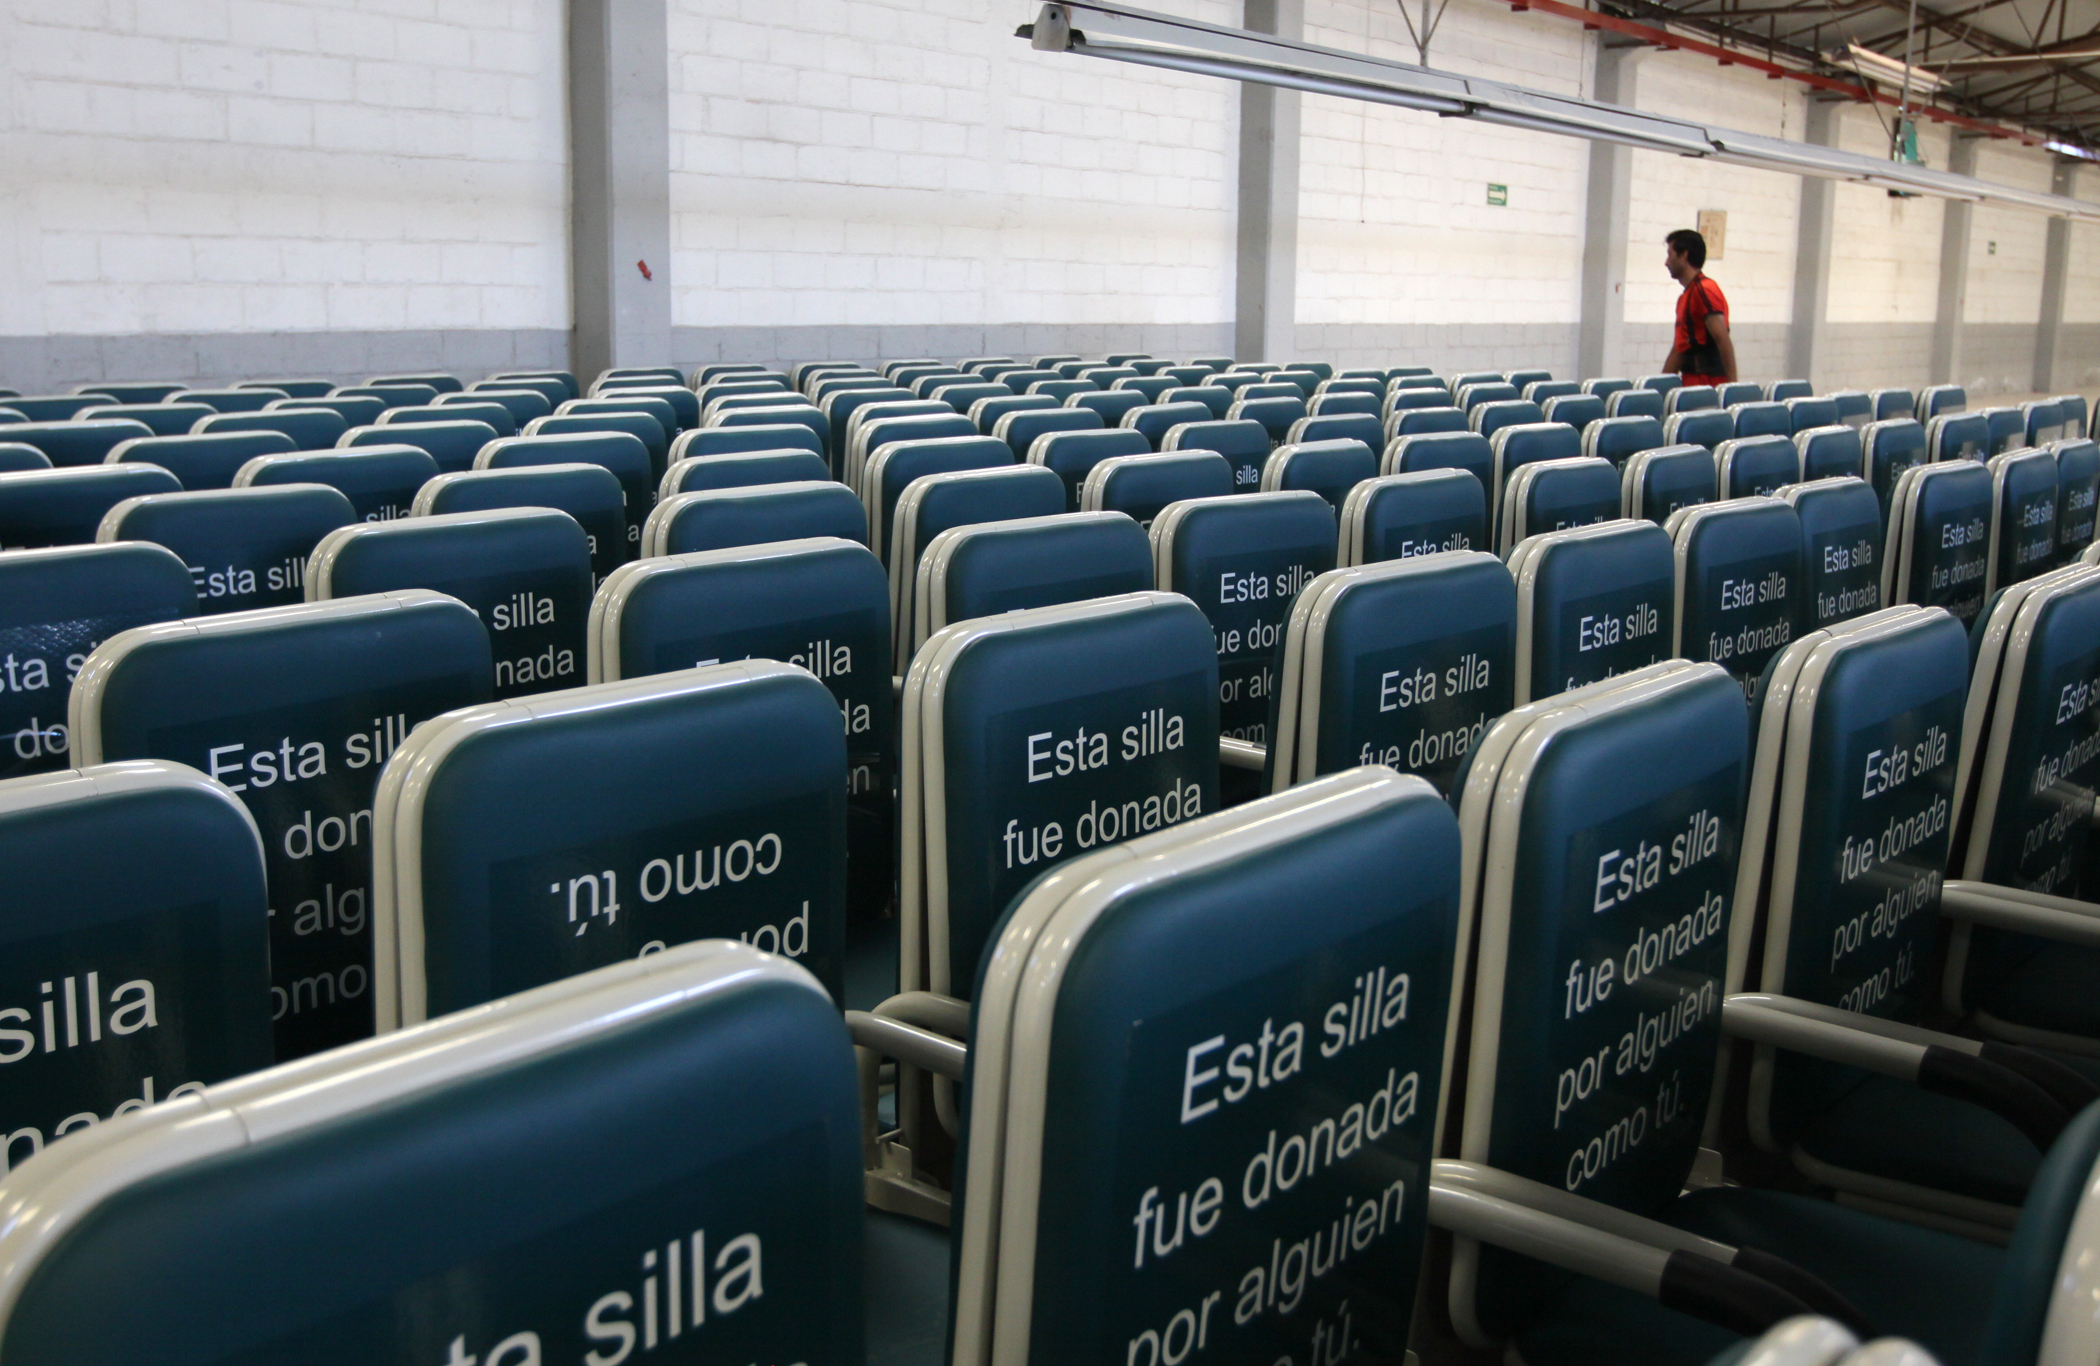 Donación de sillas-cama al IMSS beneficiará a 6.5 millones de personas